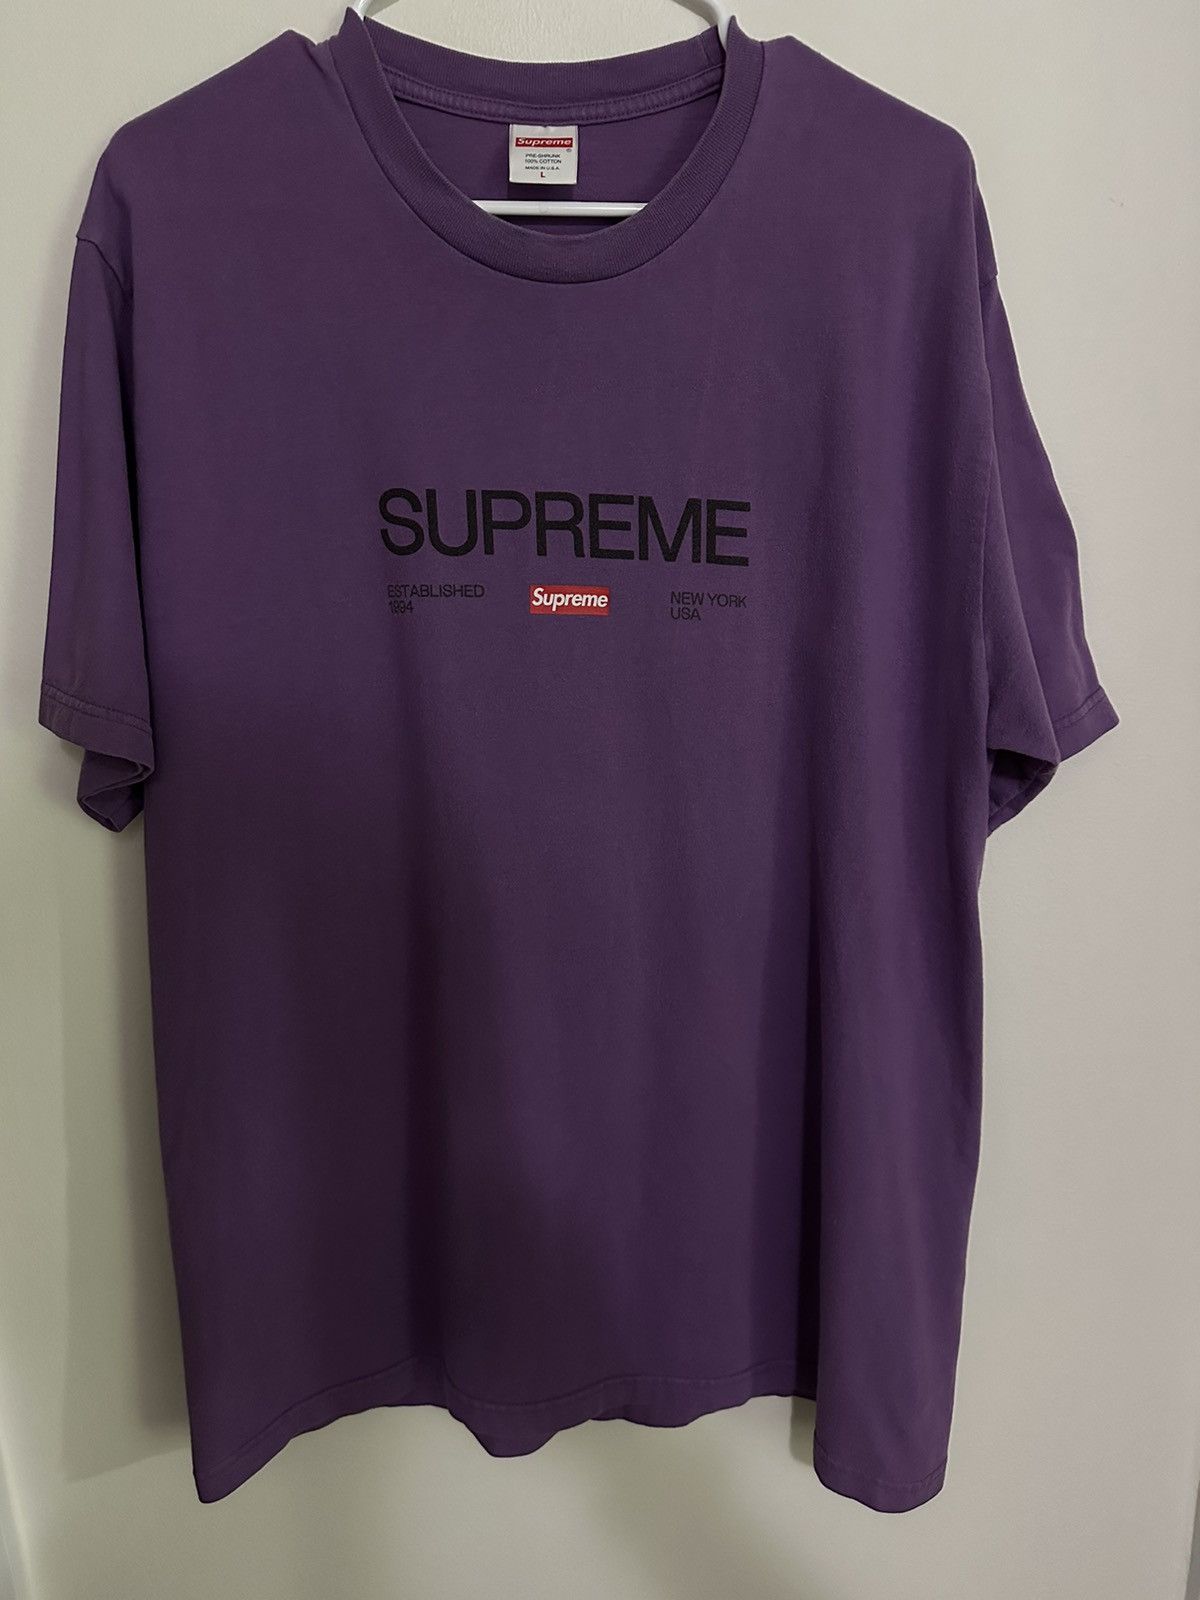 Supreme Supreme Est. 1994 Tee | Grailed